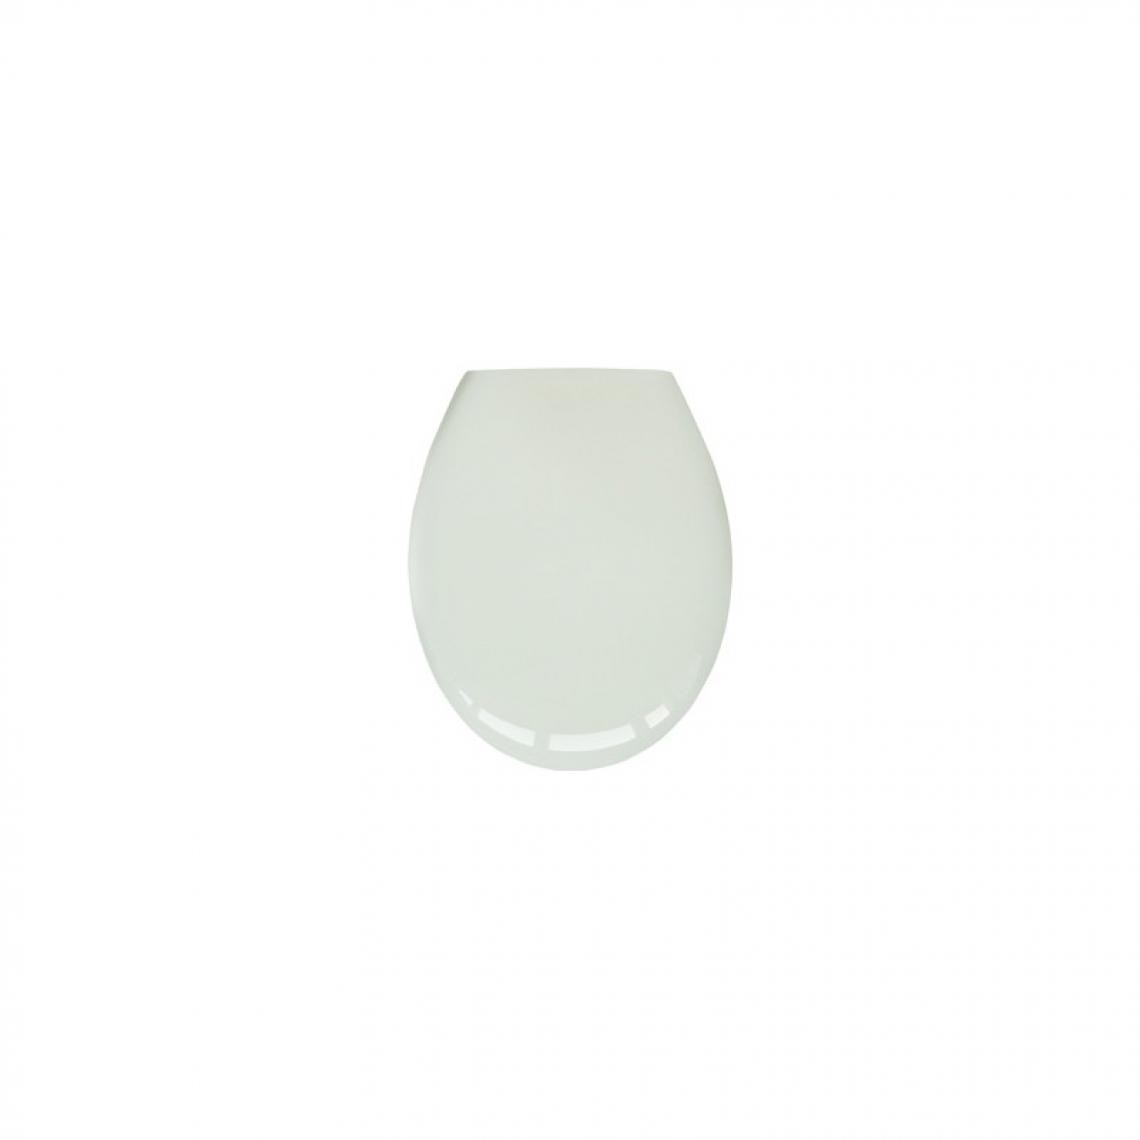 marque generique - Abattant WC Palermo blanc - Abattant WC